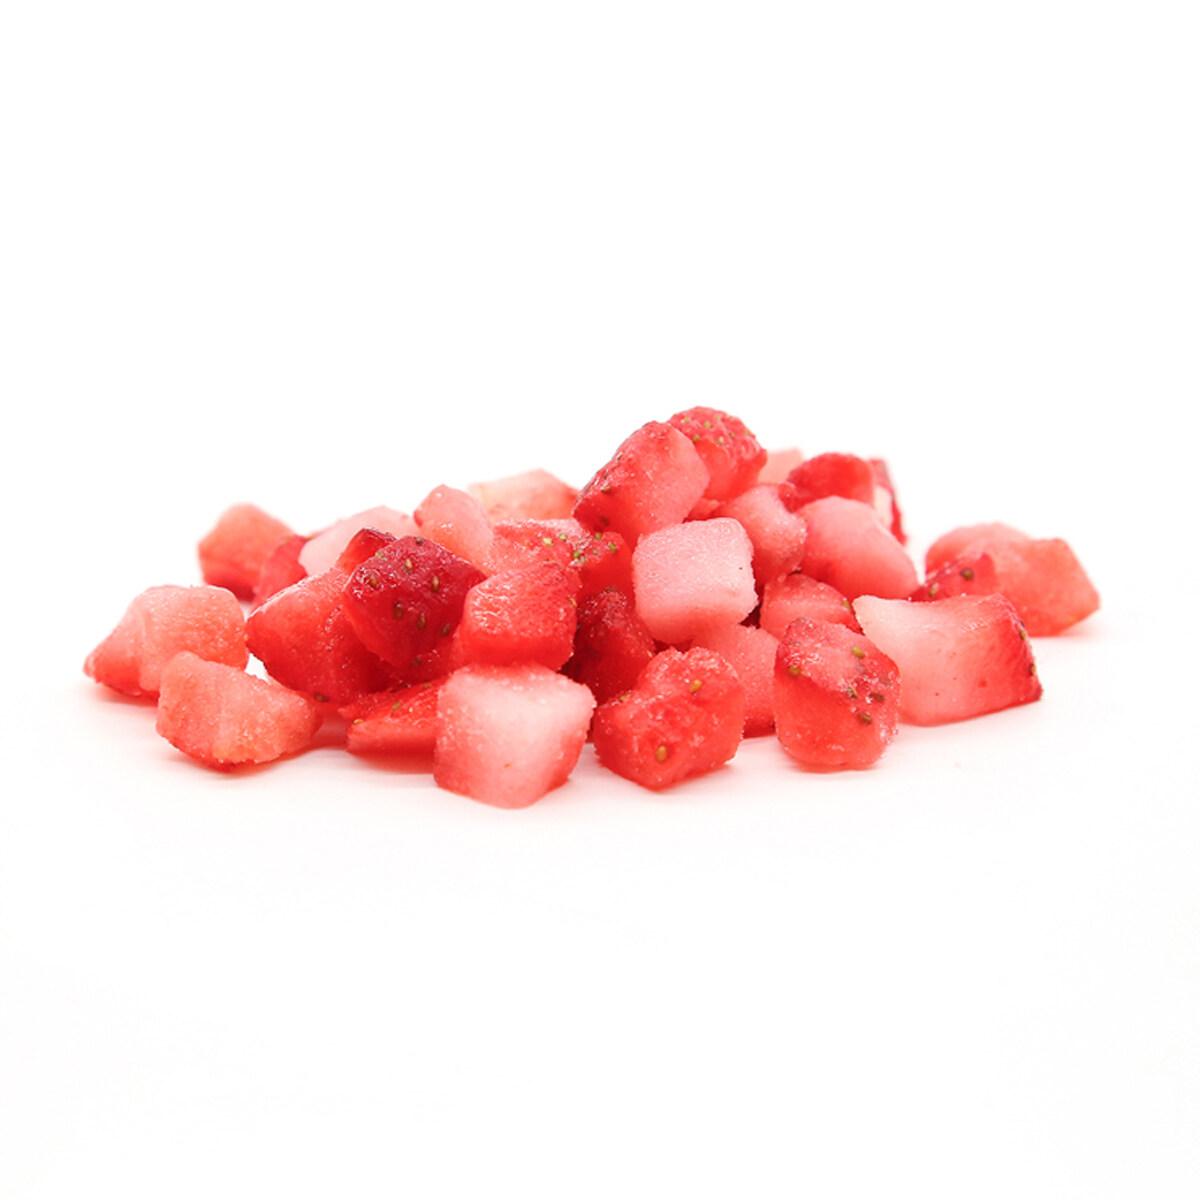 도매 냉동 부추 딸기, 얇게 썬 냉동 딸기 OEM, 냉동 전체 딸기, 고품질 냉동 딸기, 냉동 딸기 장식 ODM